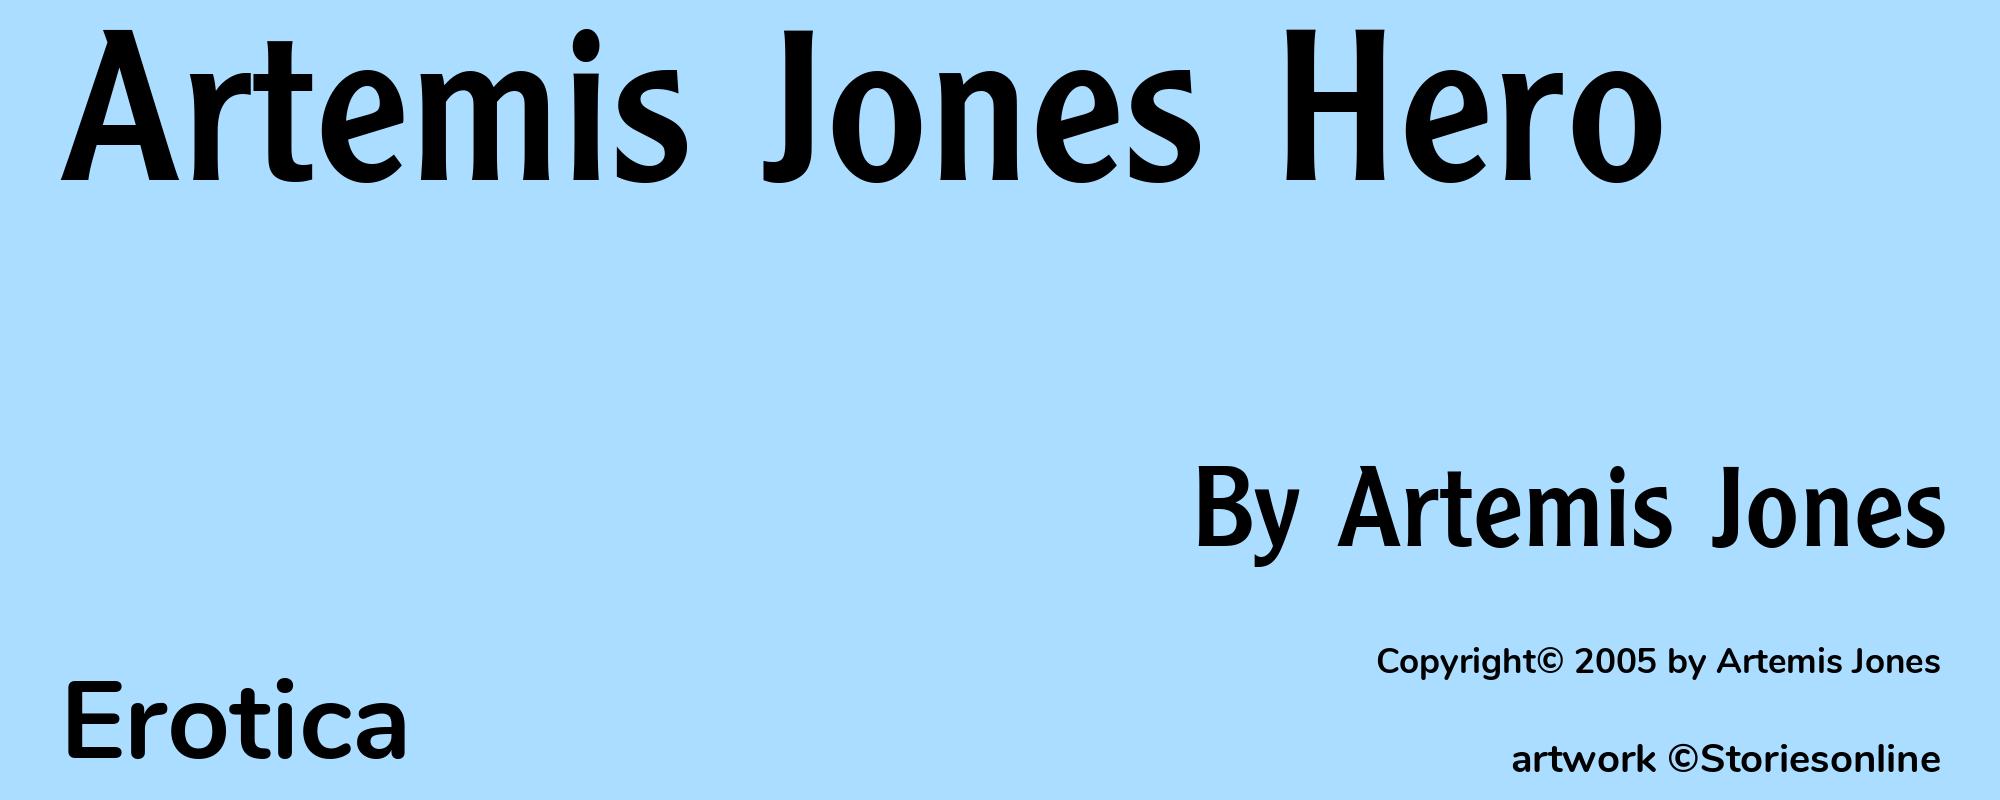 Artemis Jones Hero - Cover